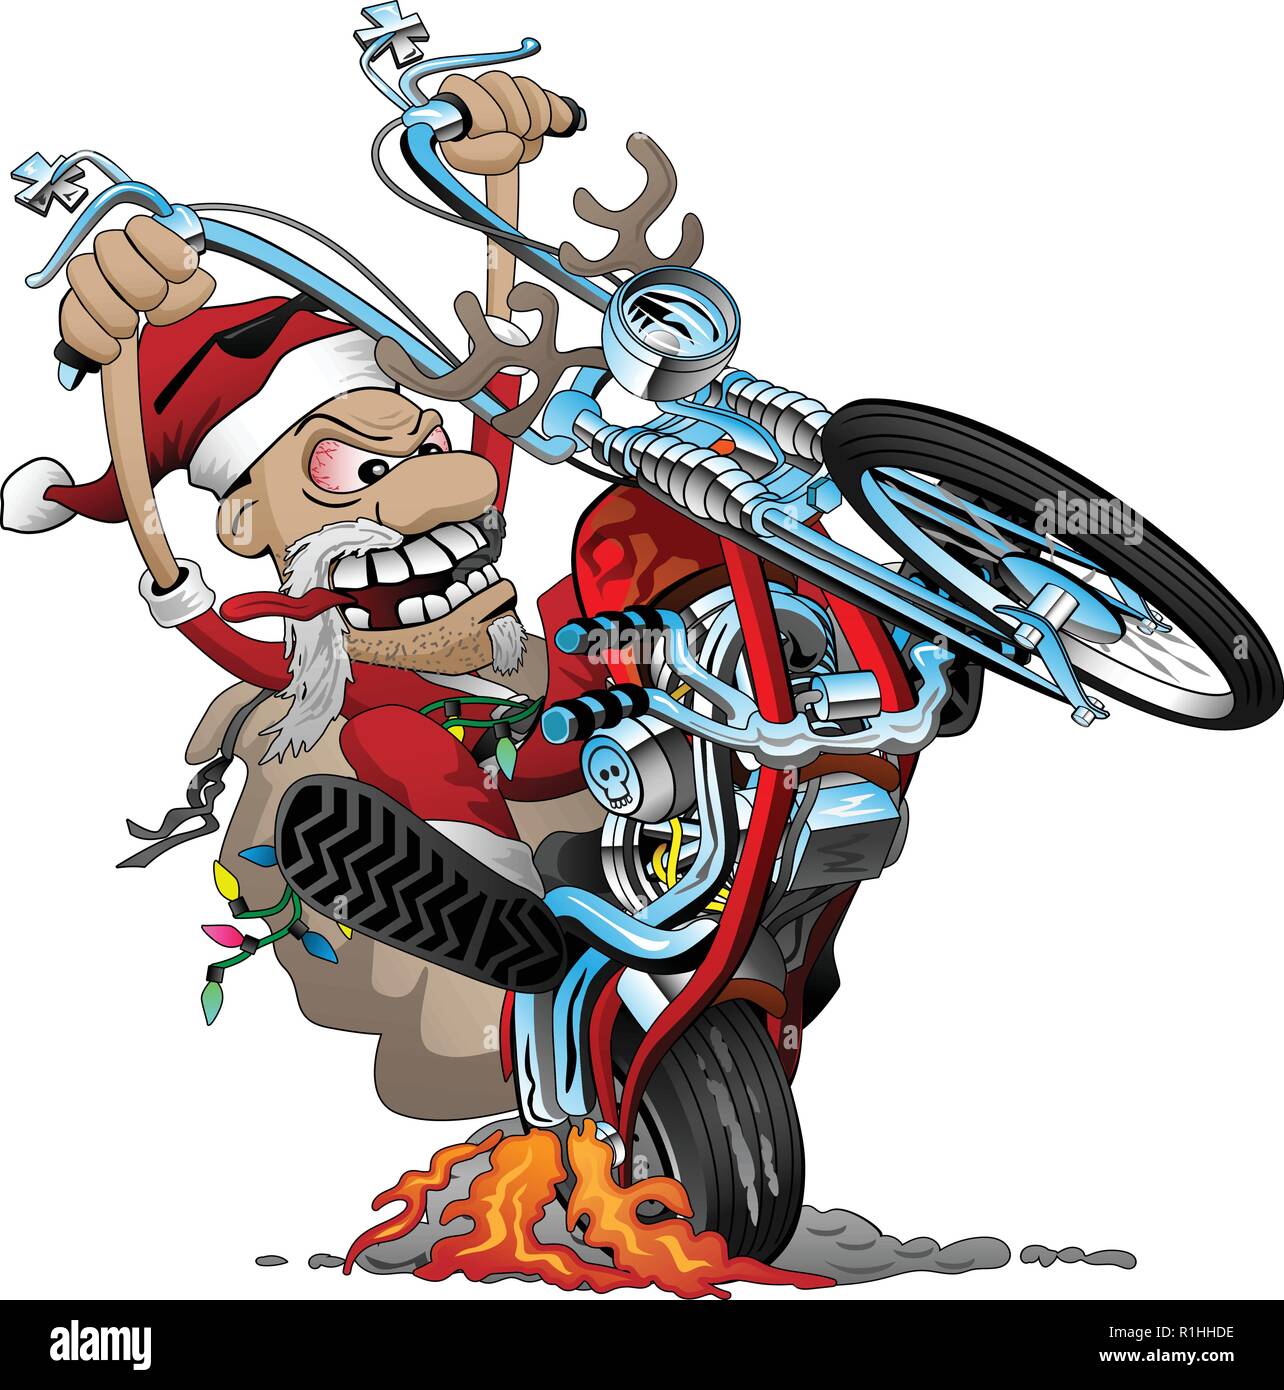 Santa Biker auf einem Amerikanischen Stil chopper Motorrad, knallen einen Wheelie, Vektor Cartoon Illustration Stock Vektor